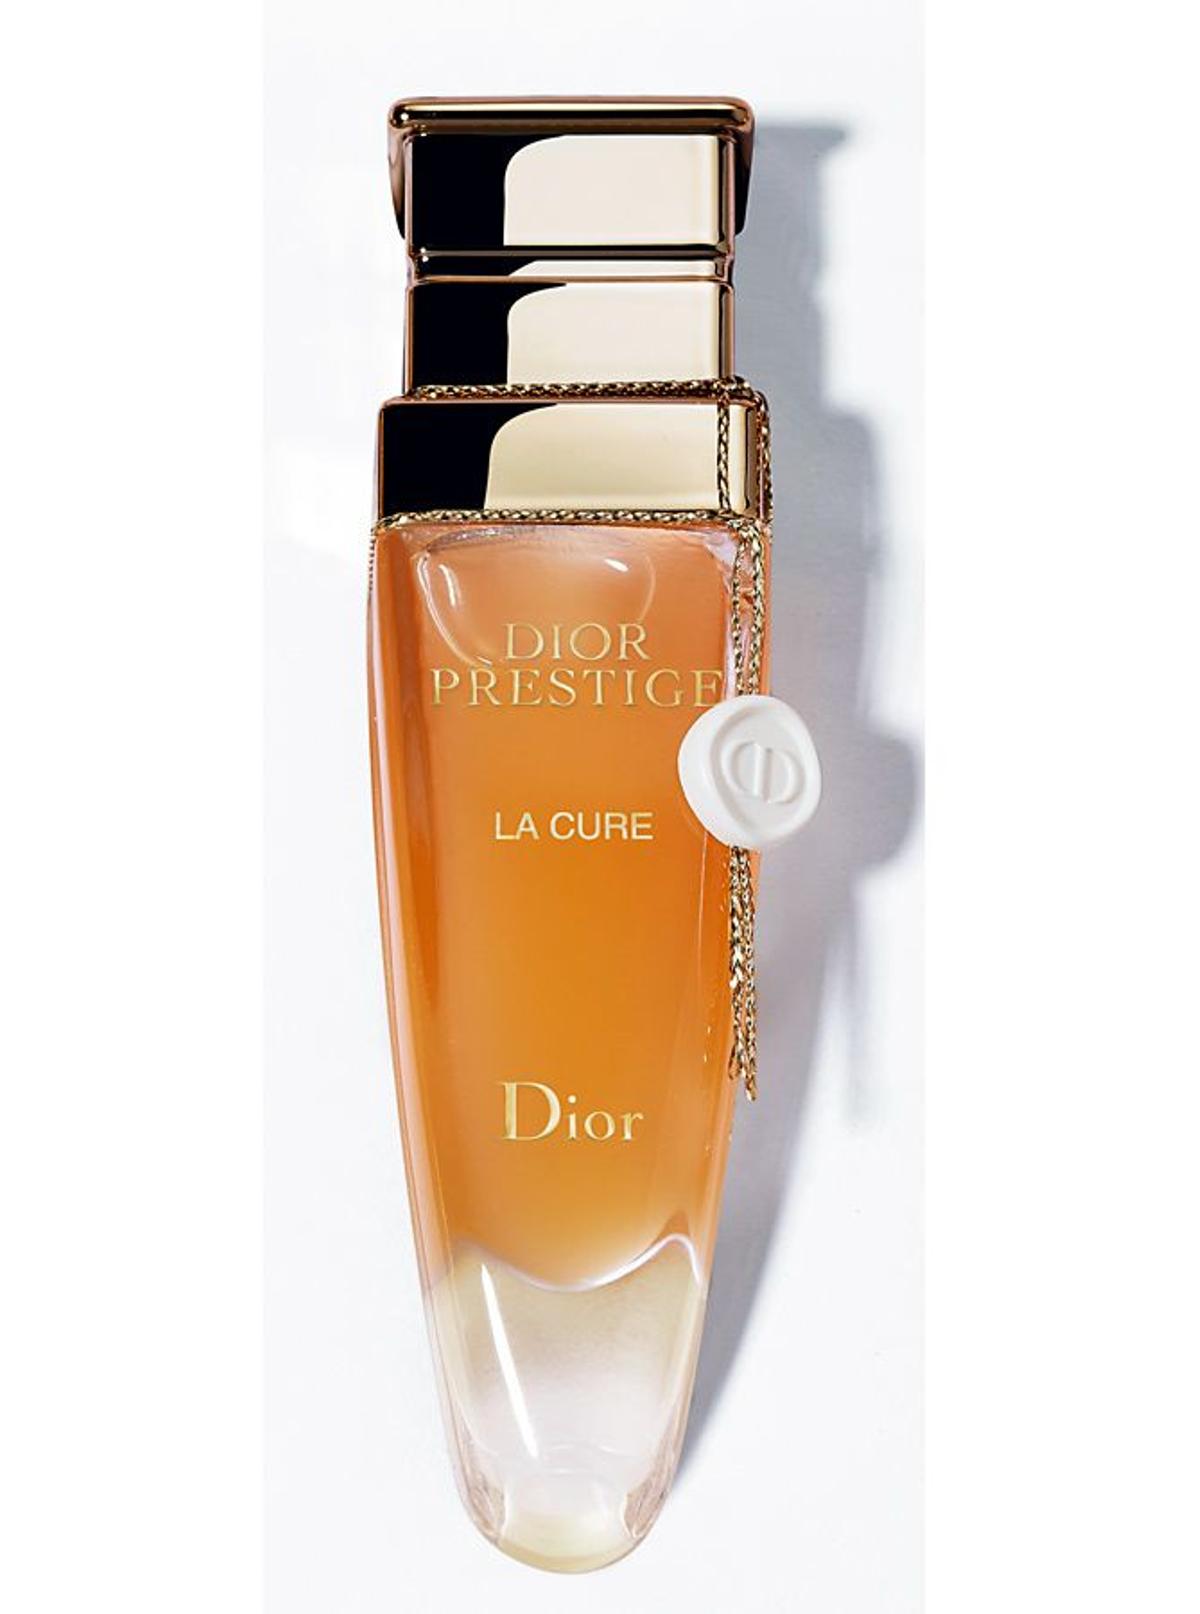 Tratamientos high class: Cofre Prestige Le Cure, de Dior